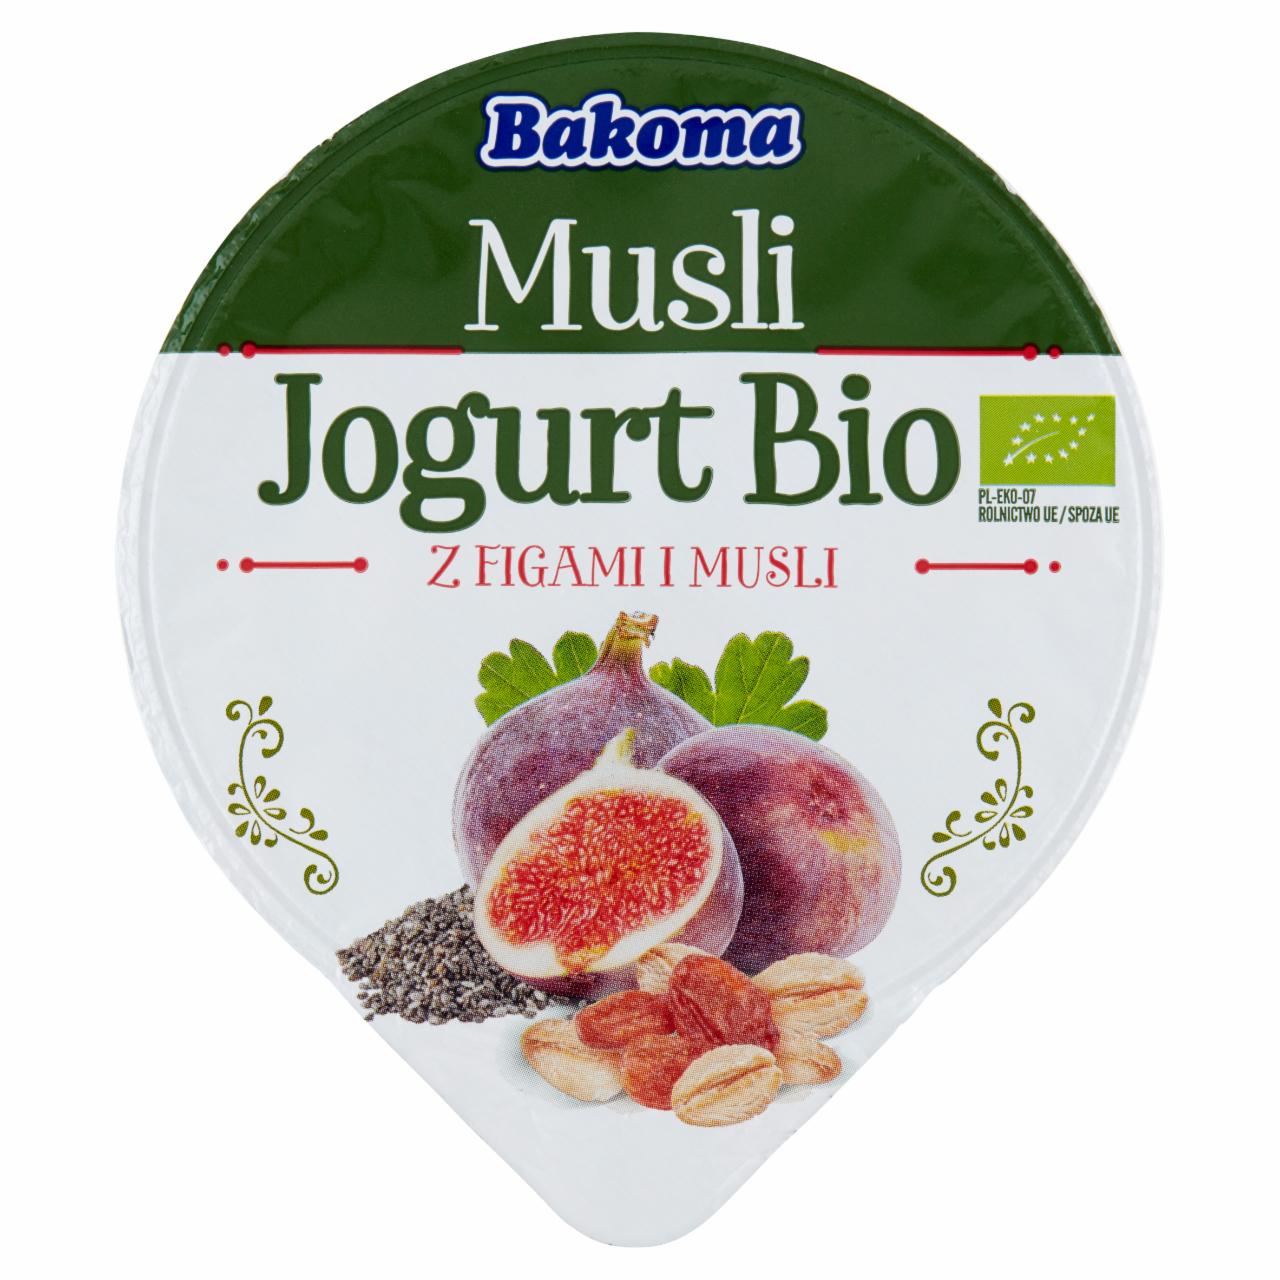 Zdjęcia - Bakoma Musli Jogurt Bio z figami i musli 180 g